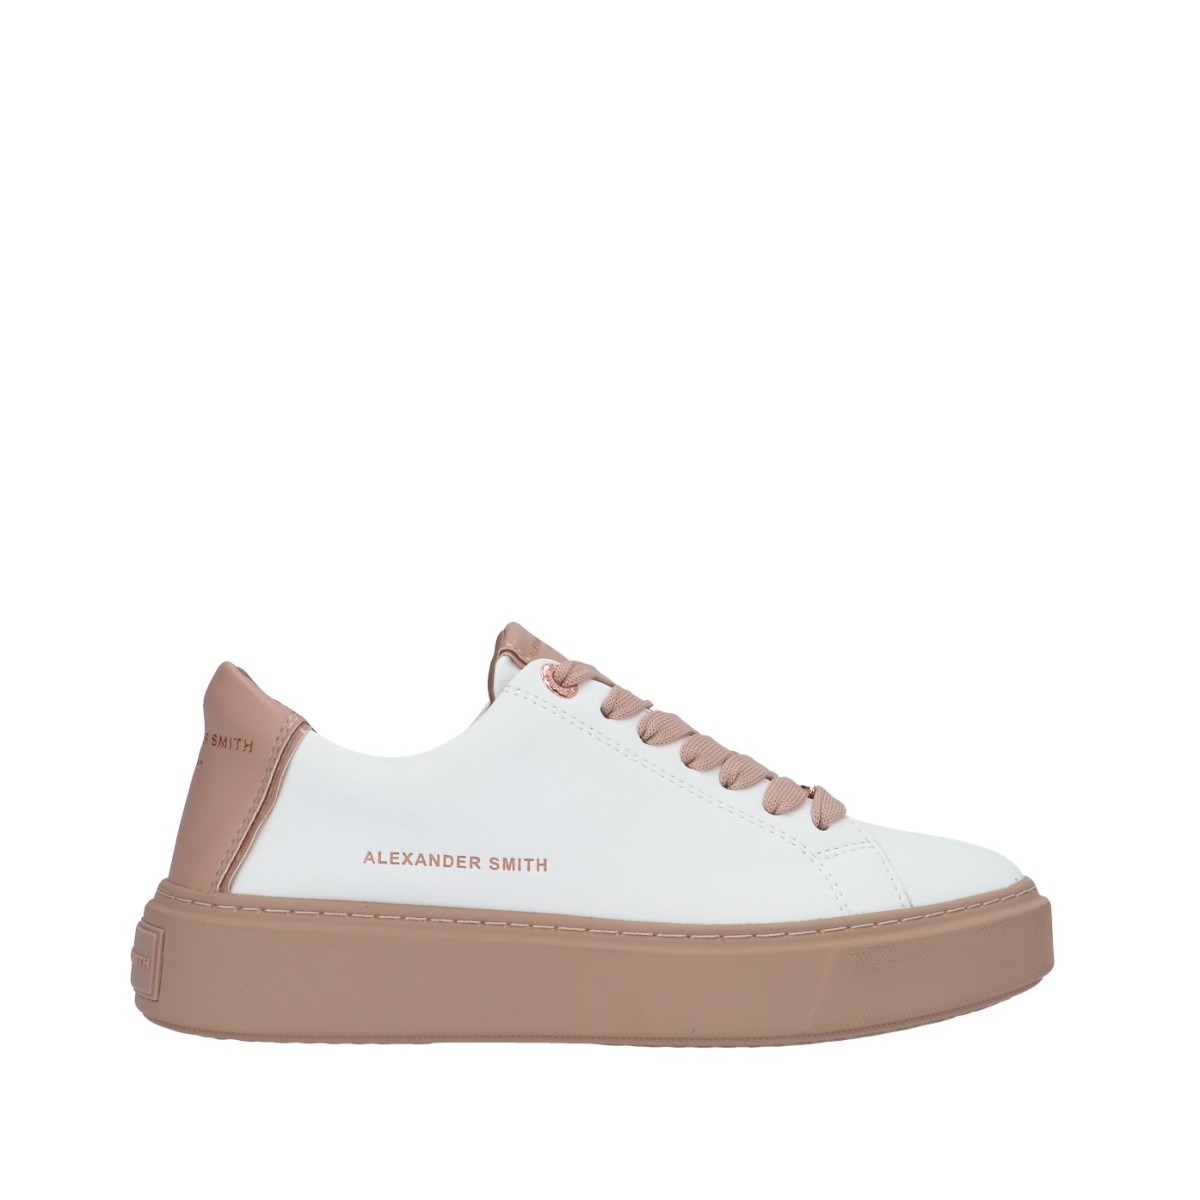 Alexander smith Sneaker Bianco/beige Gomma N1D